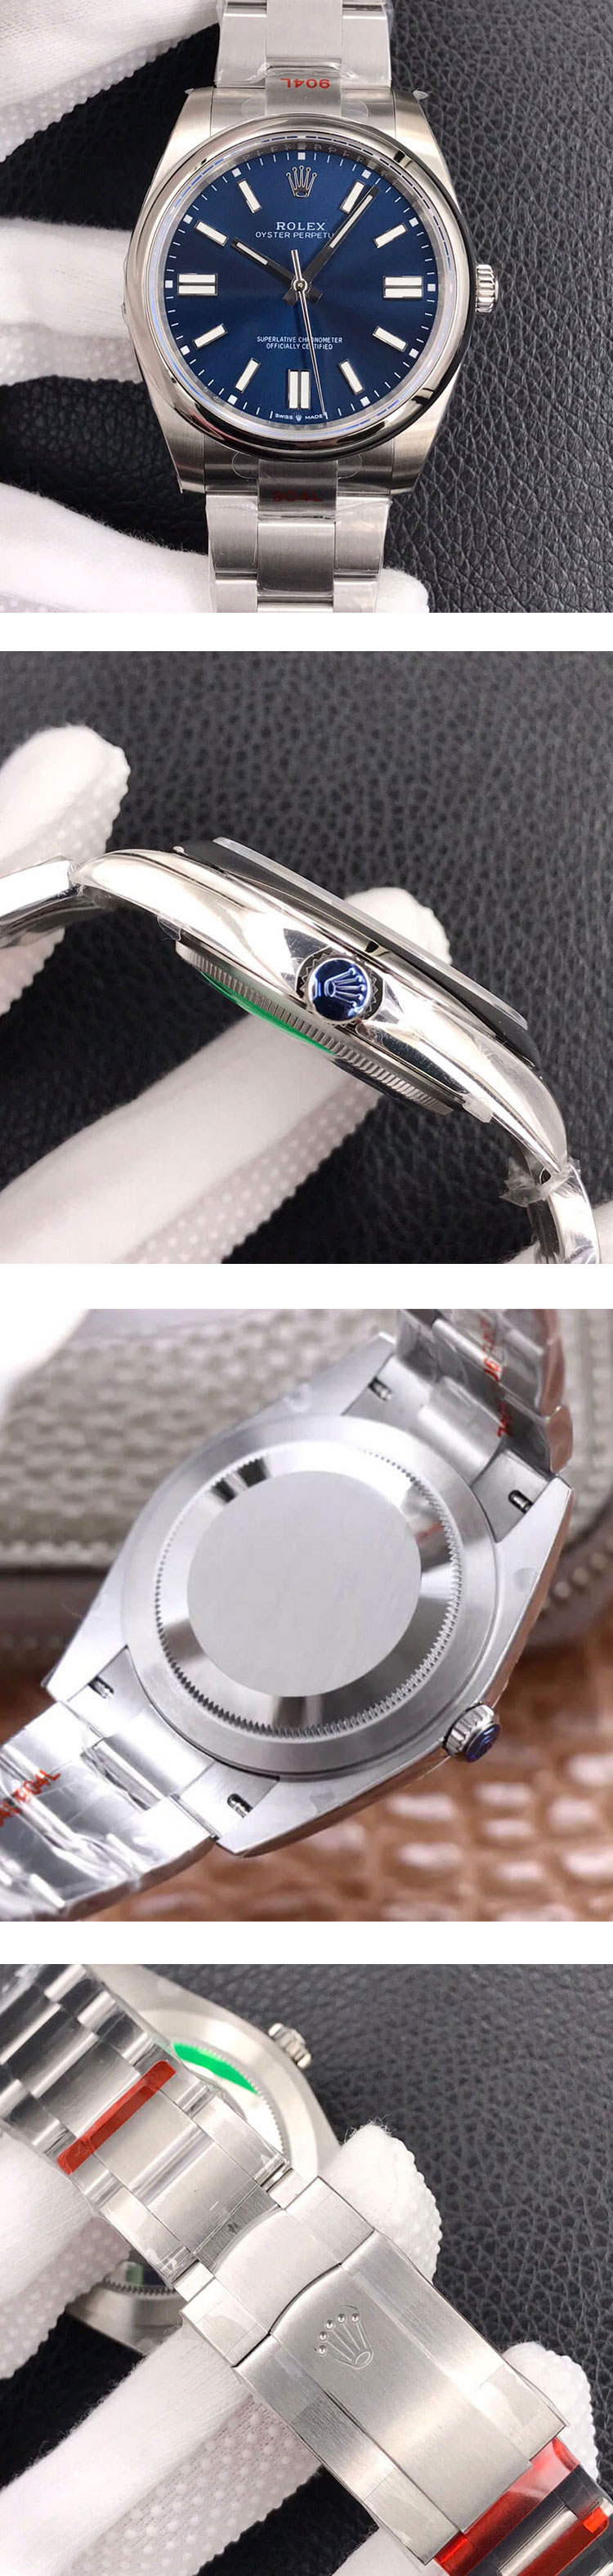 安心購入 ロレックス M124300-0003スーパーコピー時計オイスターパーペチュアル 41mm